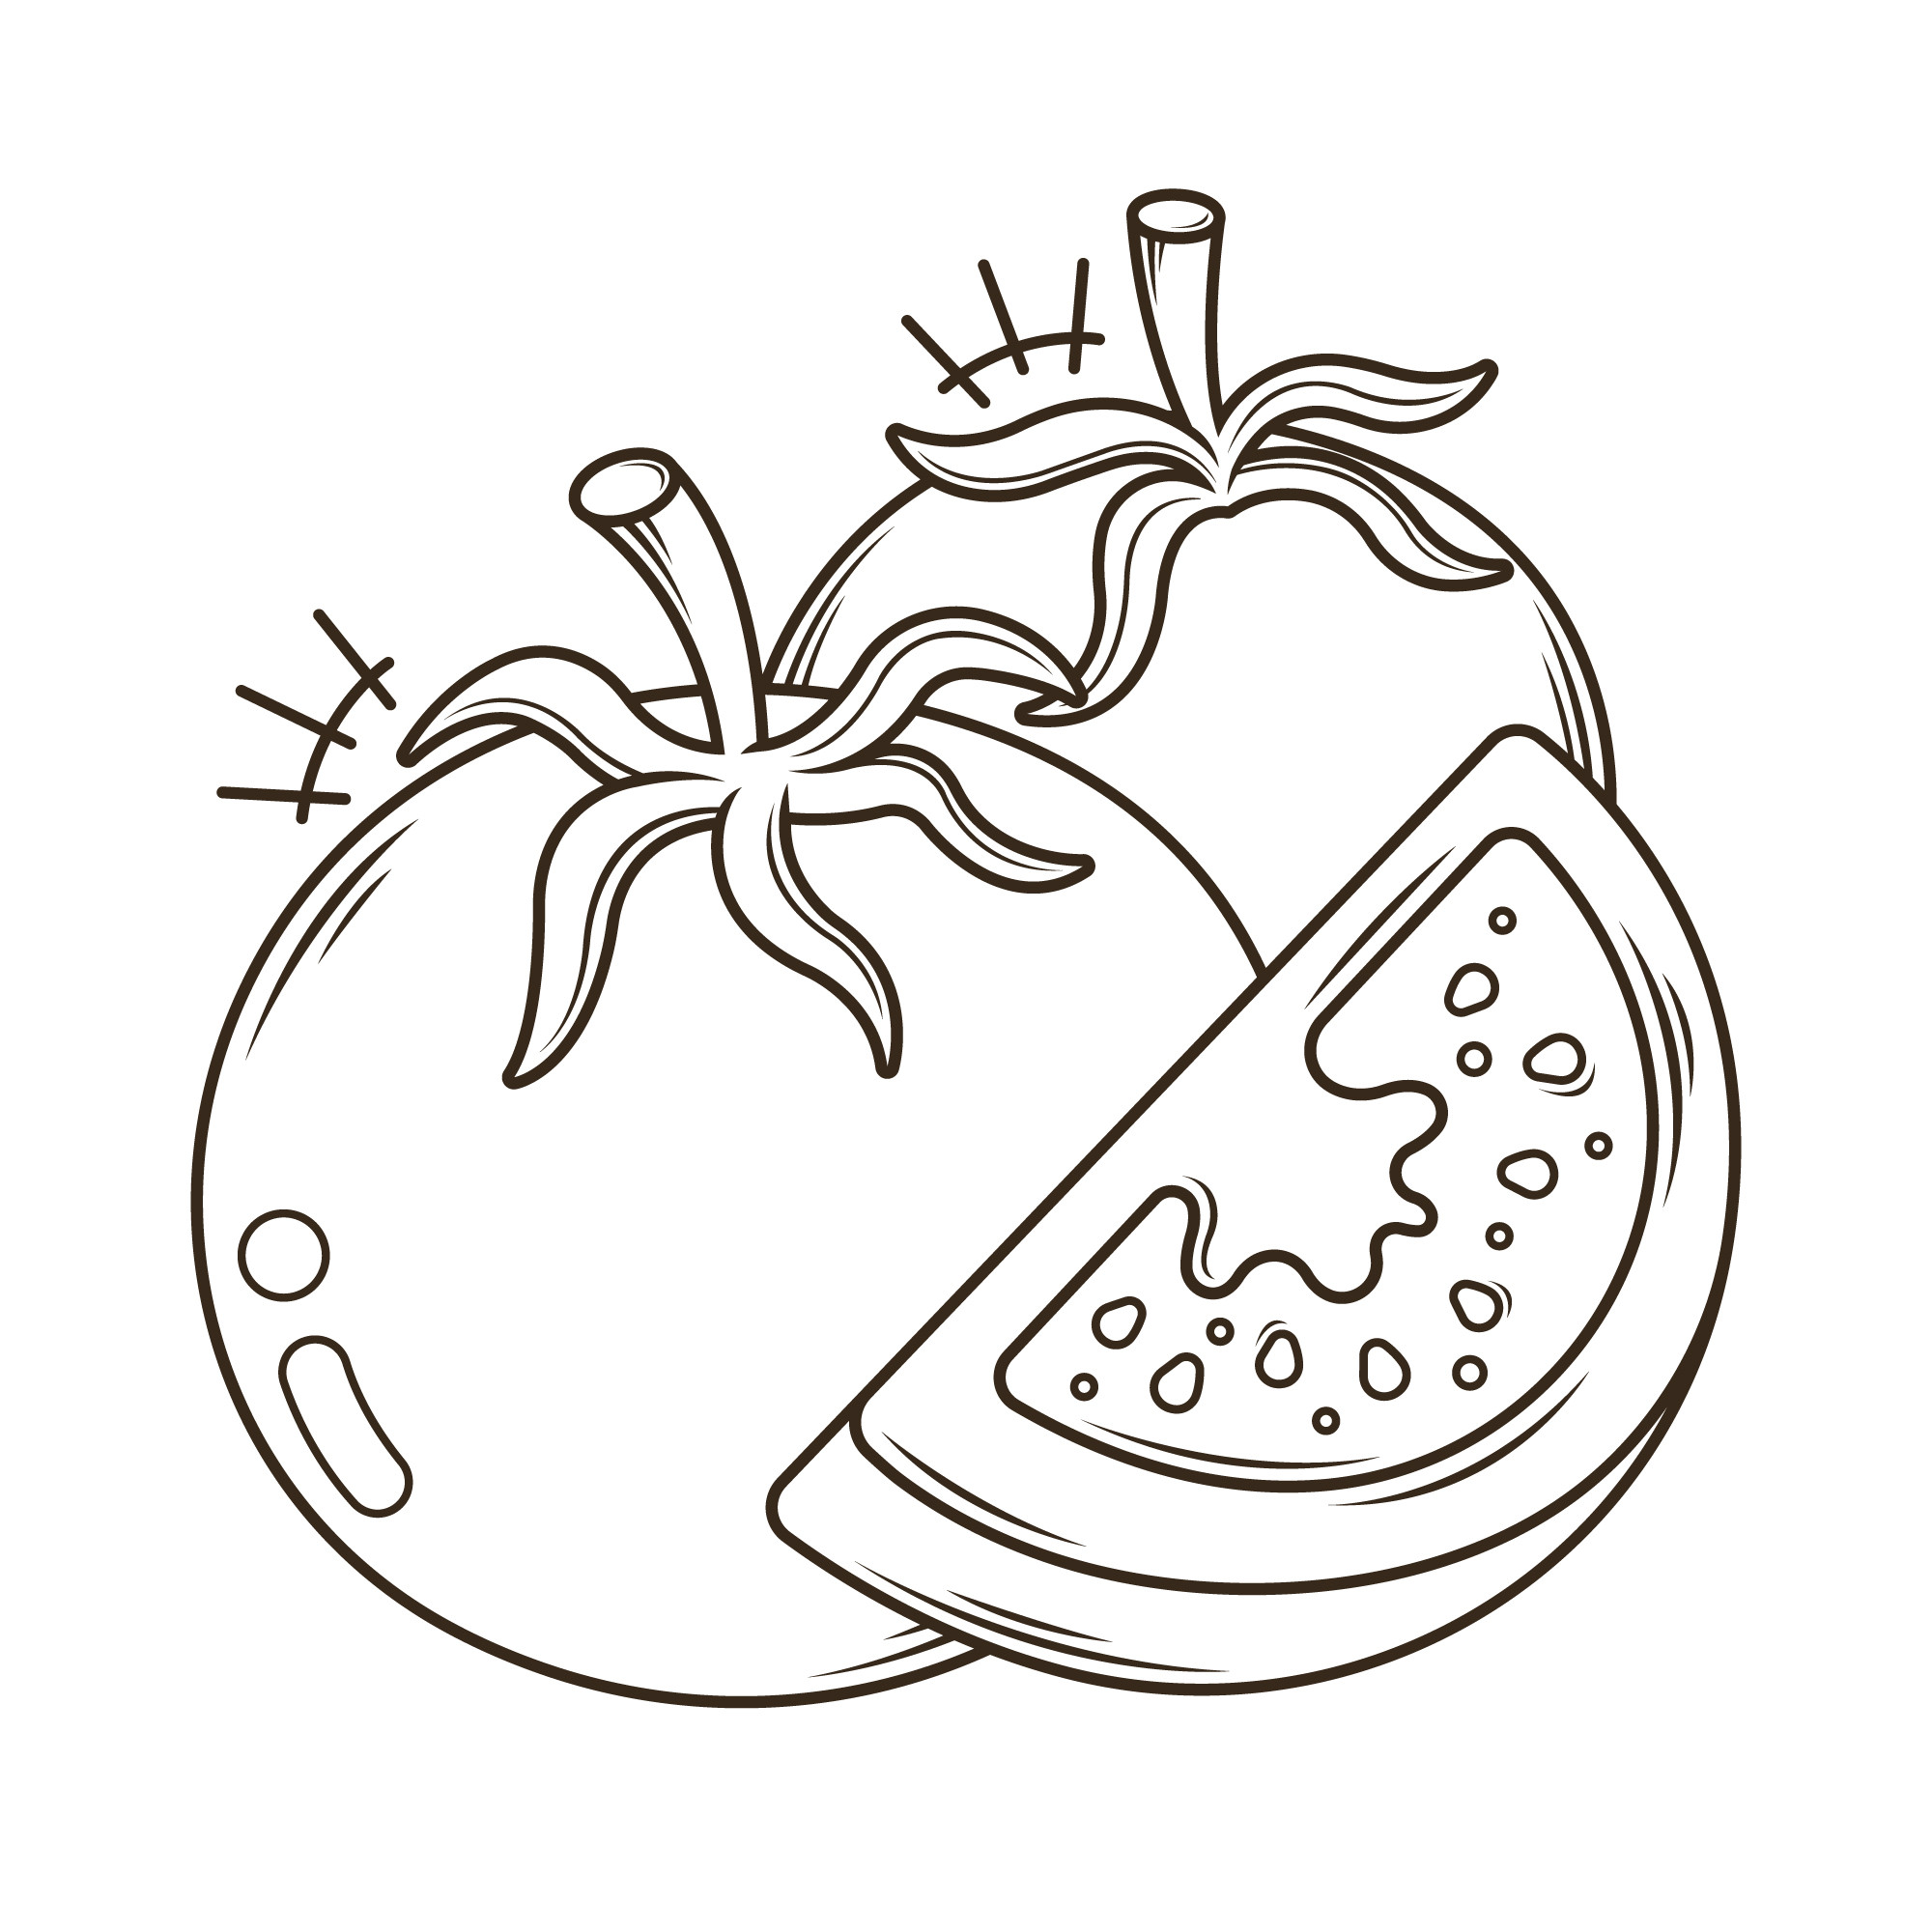 Раскраска для детей: два спелых помидора и ломтик